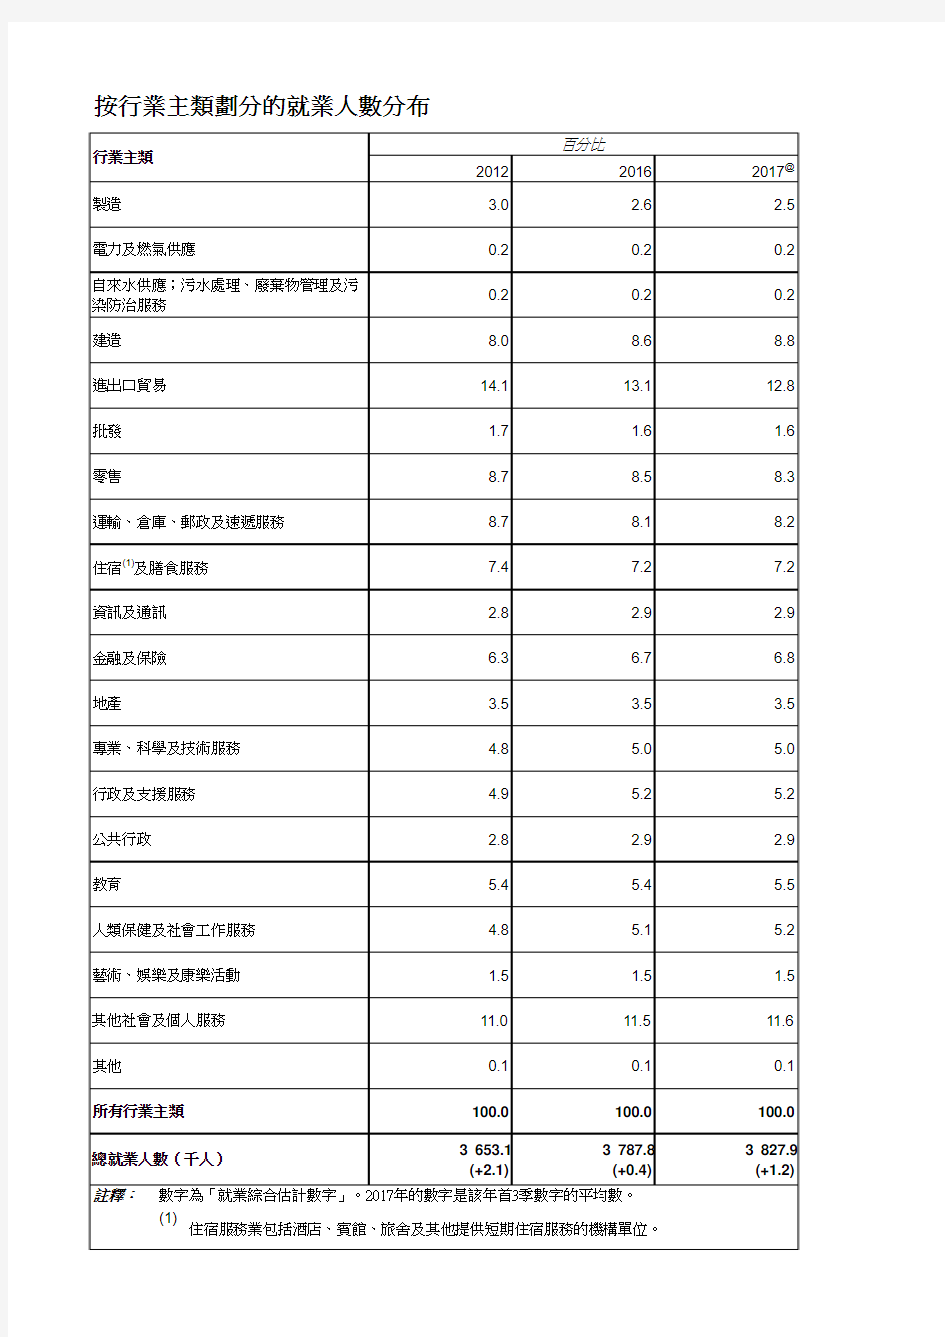 香港按行业主类的就业人数分布